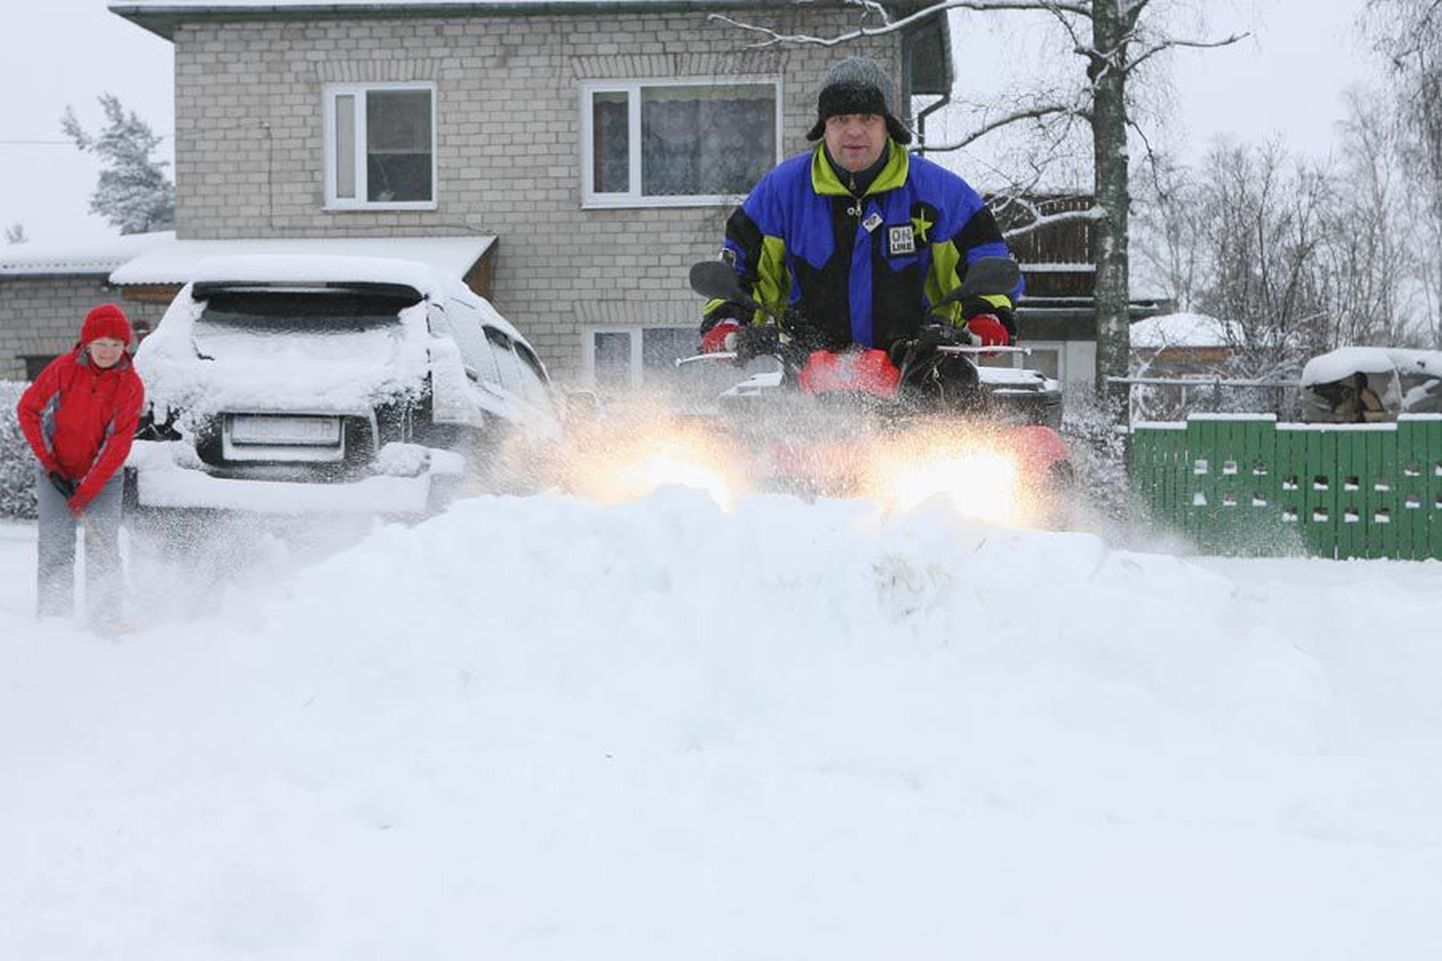 Väike neljarattaline sõiduk ATV suudab sahaga palju tööd ära teha: viljandlane Eeri Sild tuhises Uueveskil, nii et lumepilv lendas ees. Labidaga andis oma panuse Monika Murumets.